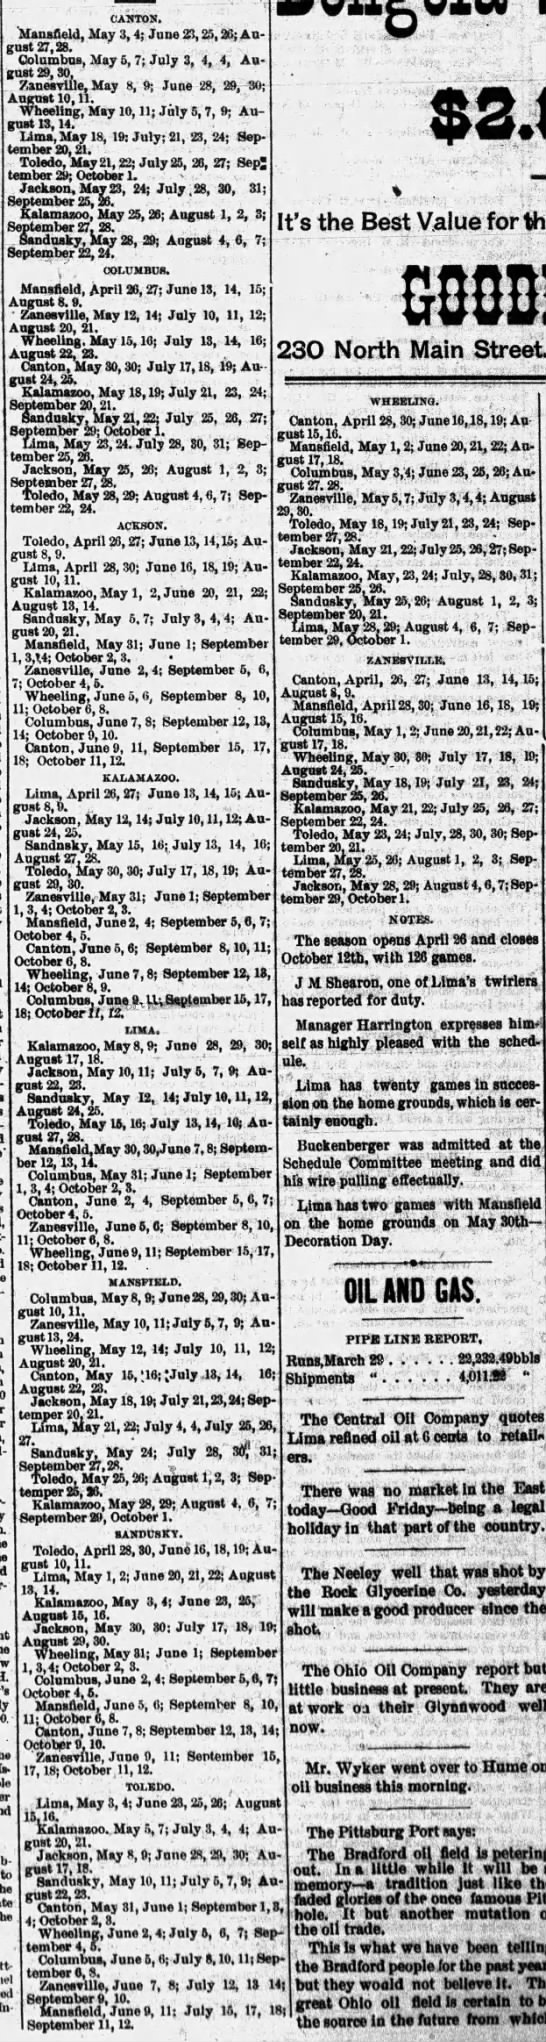 1888 Tri-State League schedule - 